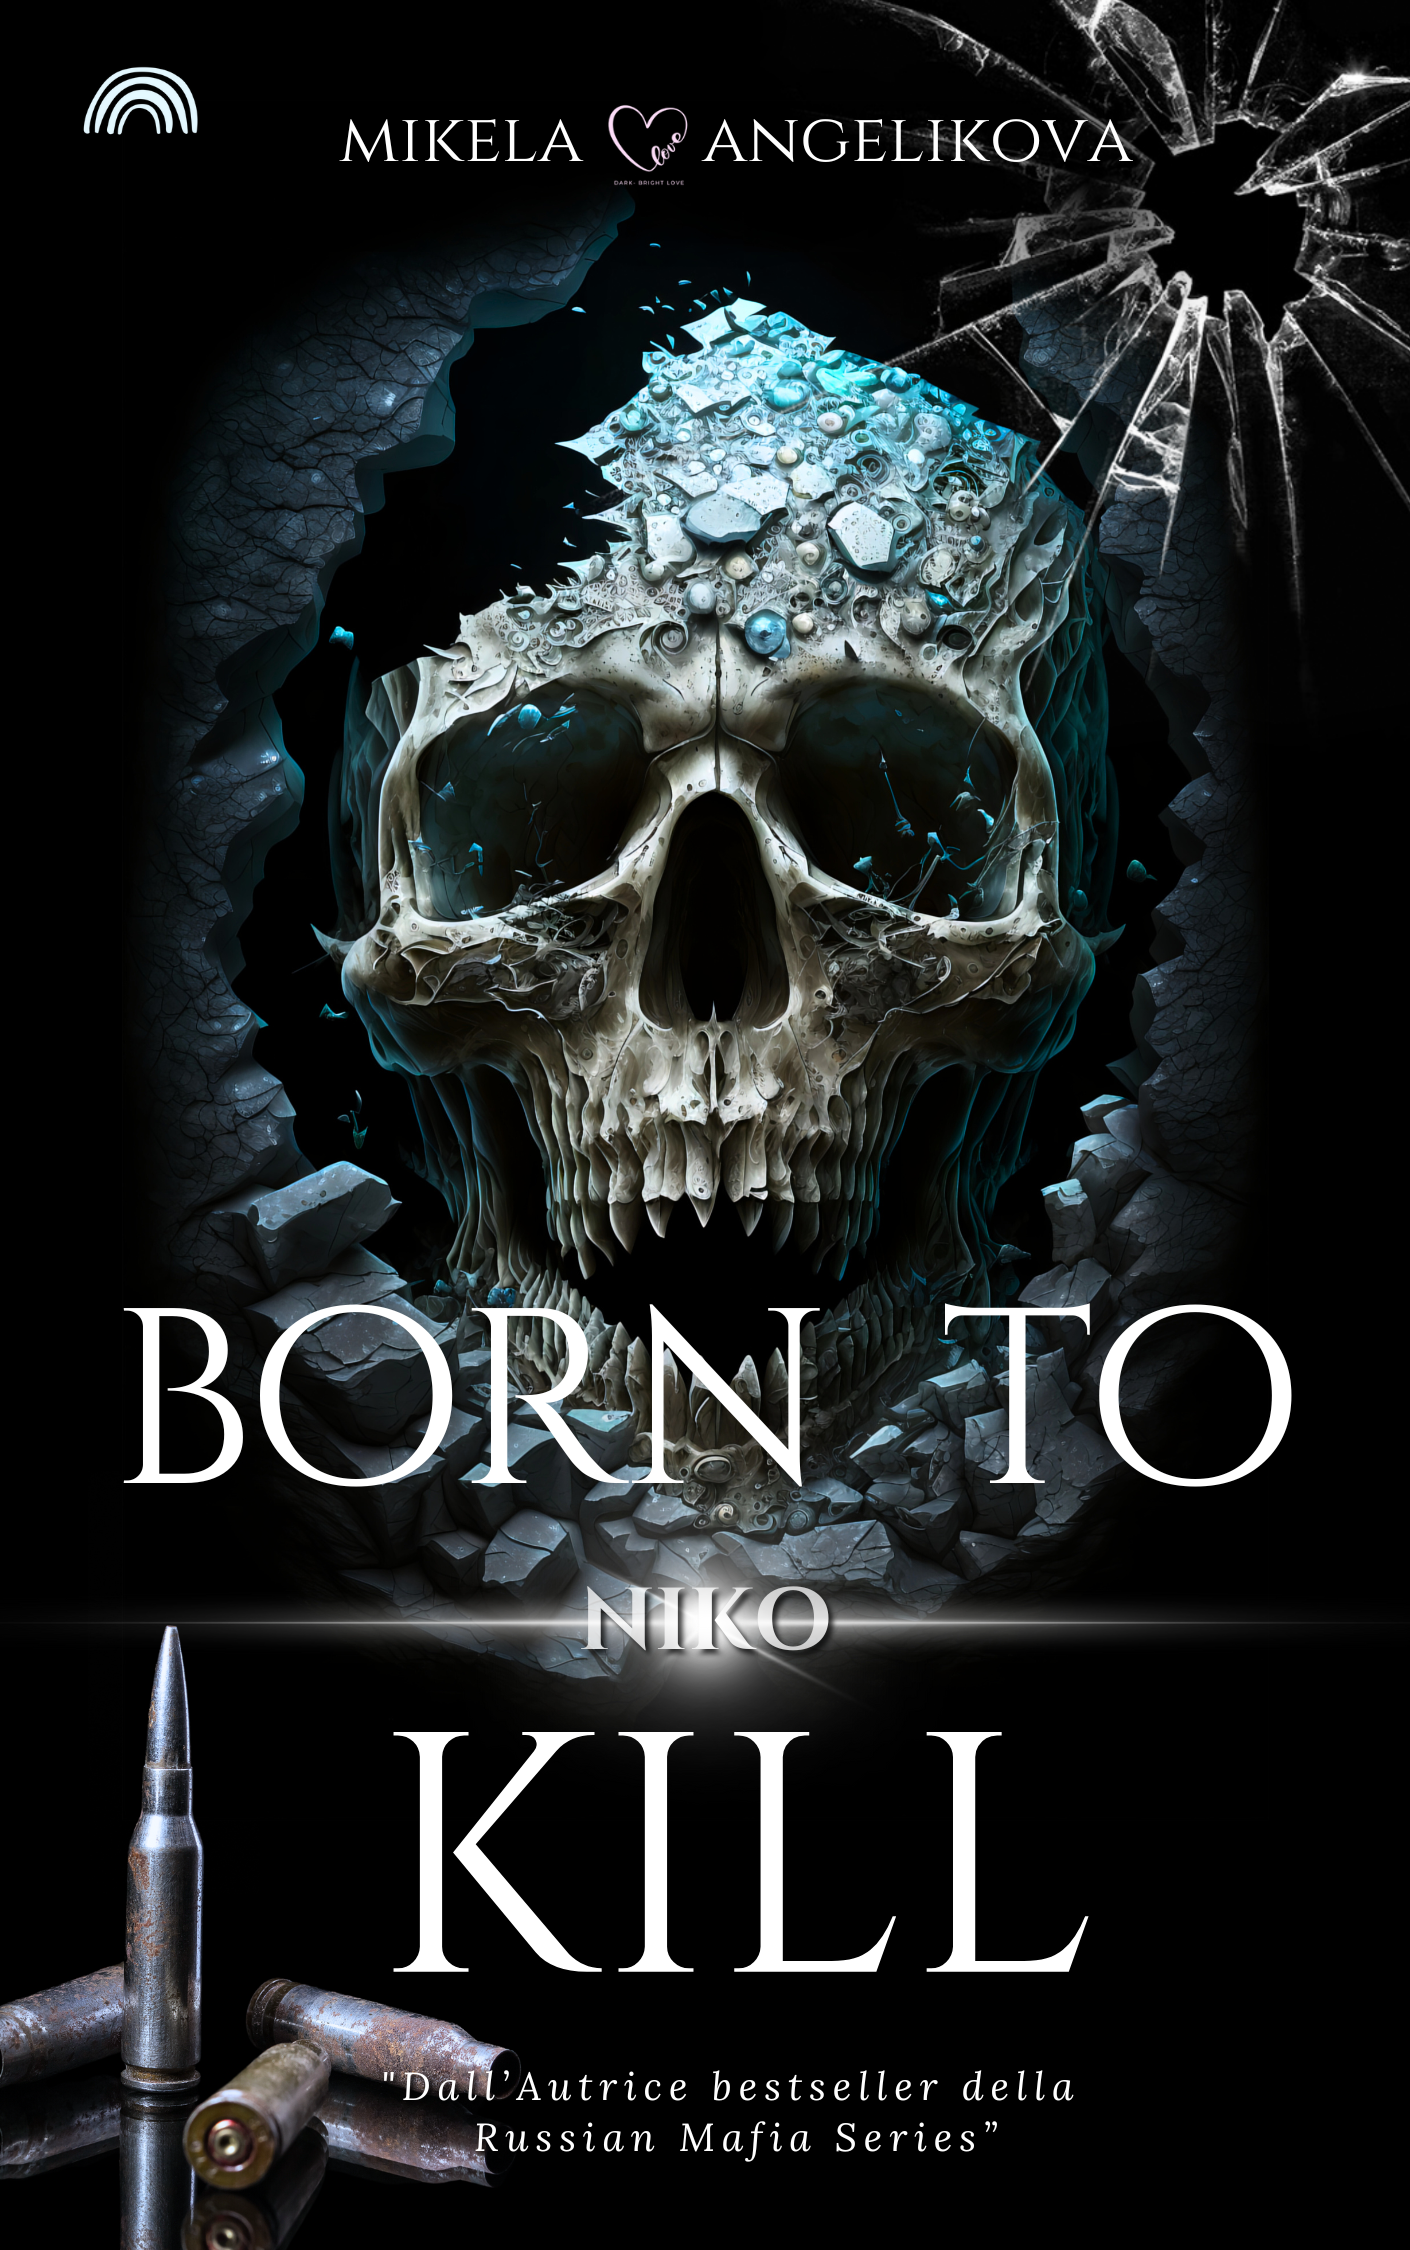 Segnalazione di uscita “Niko – Born to kill” di Mikela Angelikova